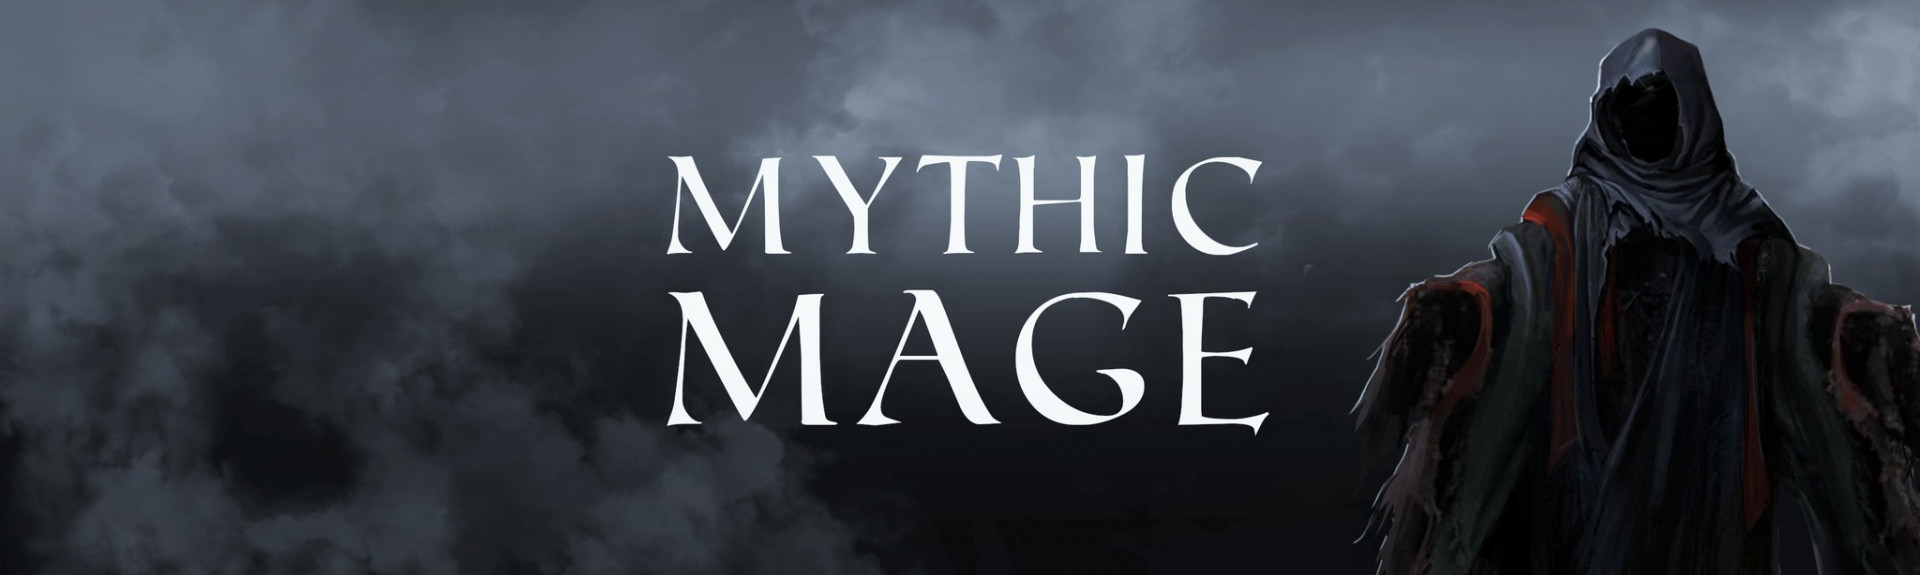 Mythic Mage